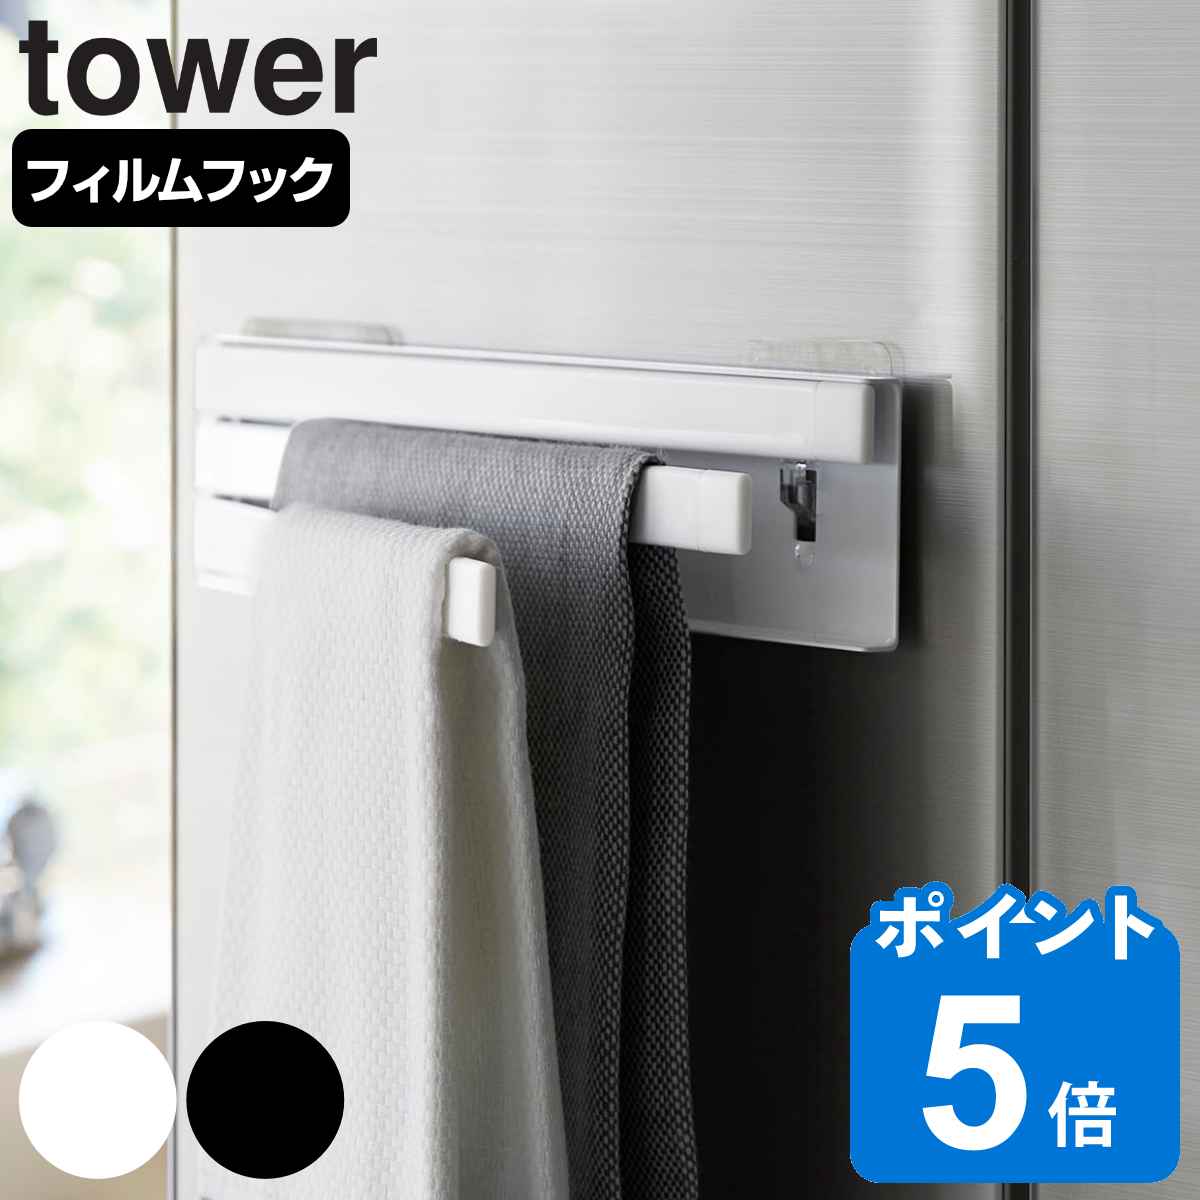 山崎実業 tower フィルムフック布巾ハンガー タワー